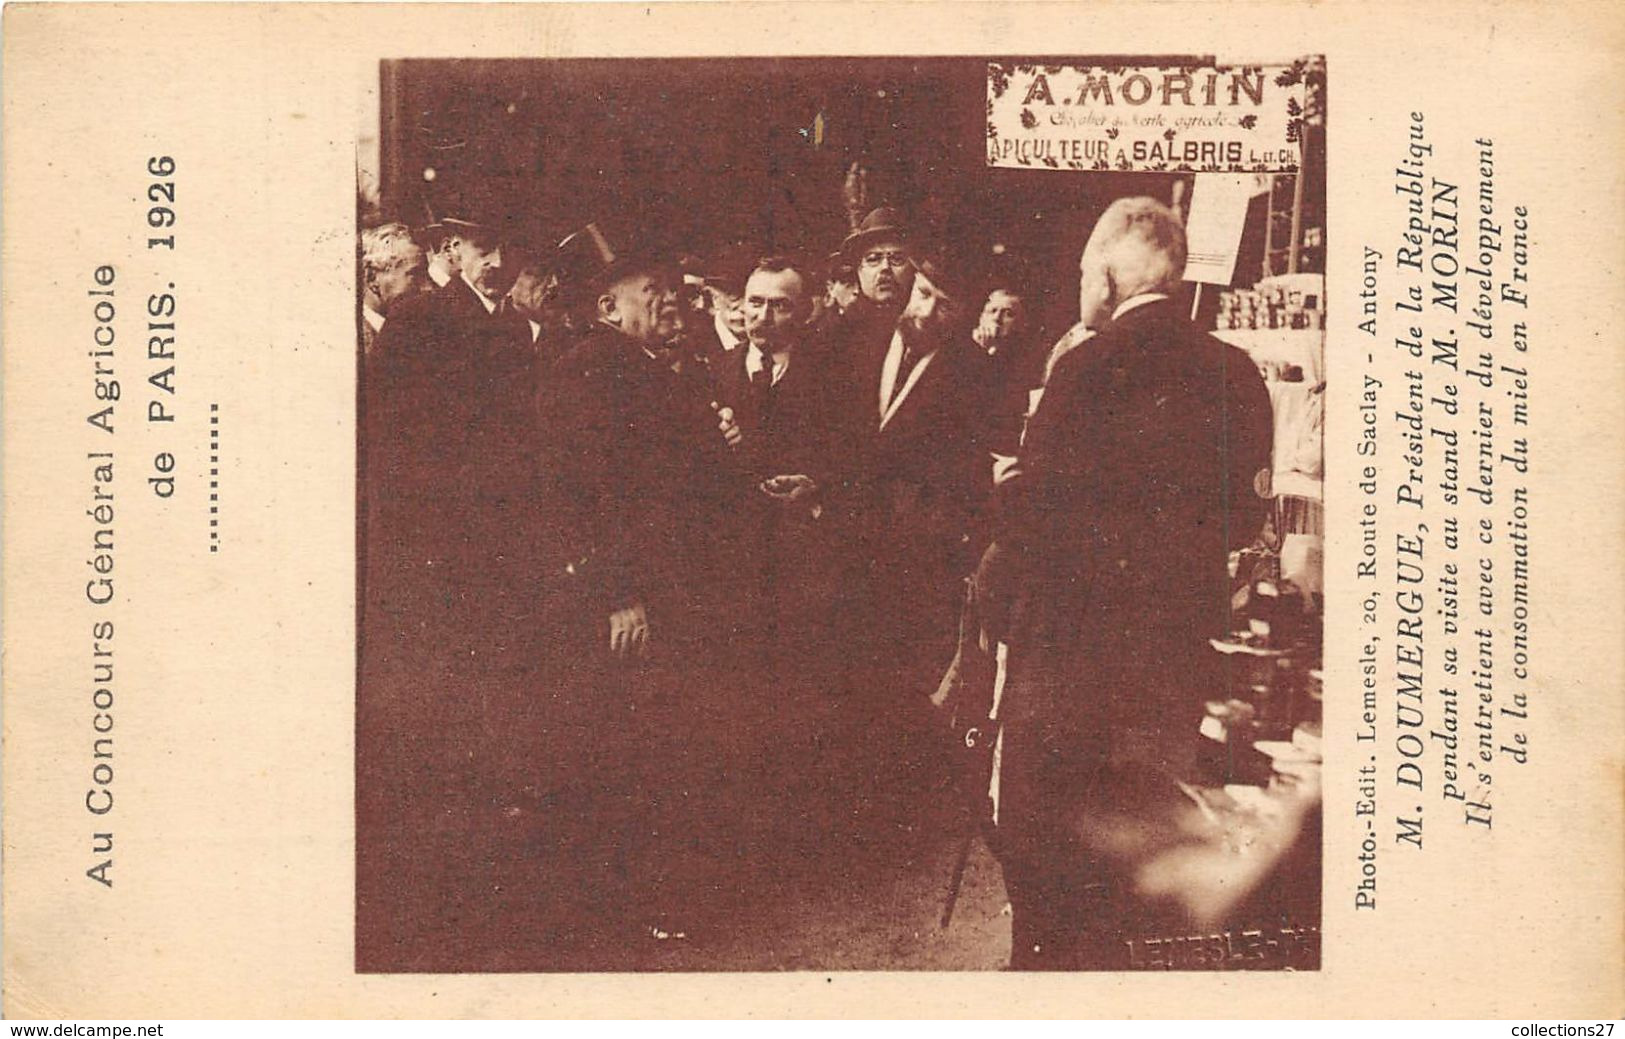 PARIS-AU ONCOURS GENERAL AGRICOLE 1926- M. DOUMERGUE AU STAND DE M. MORIN S'ENTRETIENT SUR LA CONSOMMATION DU MIEL EN FR - Expositions